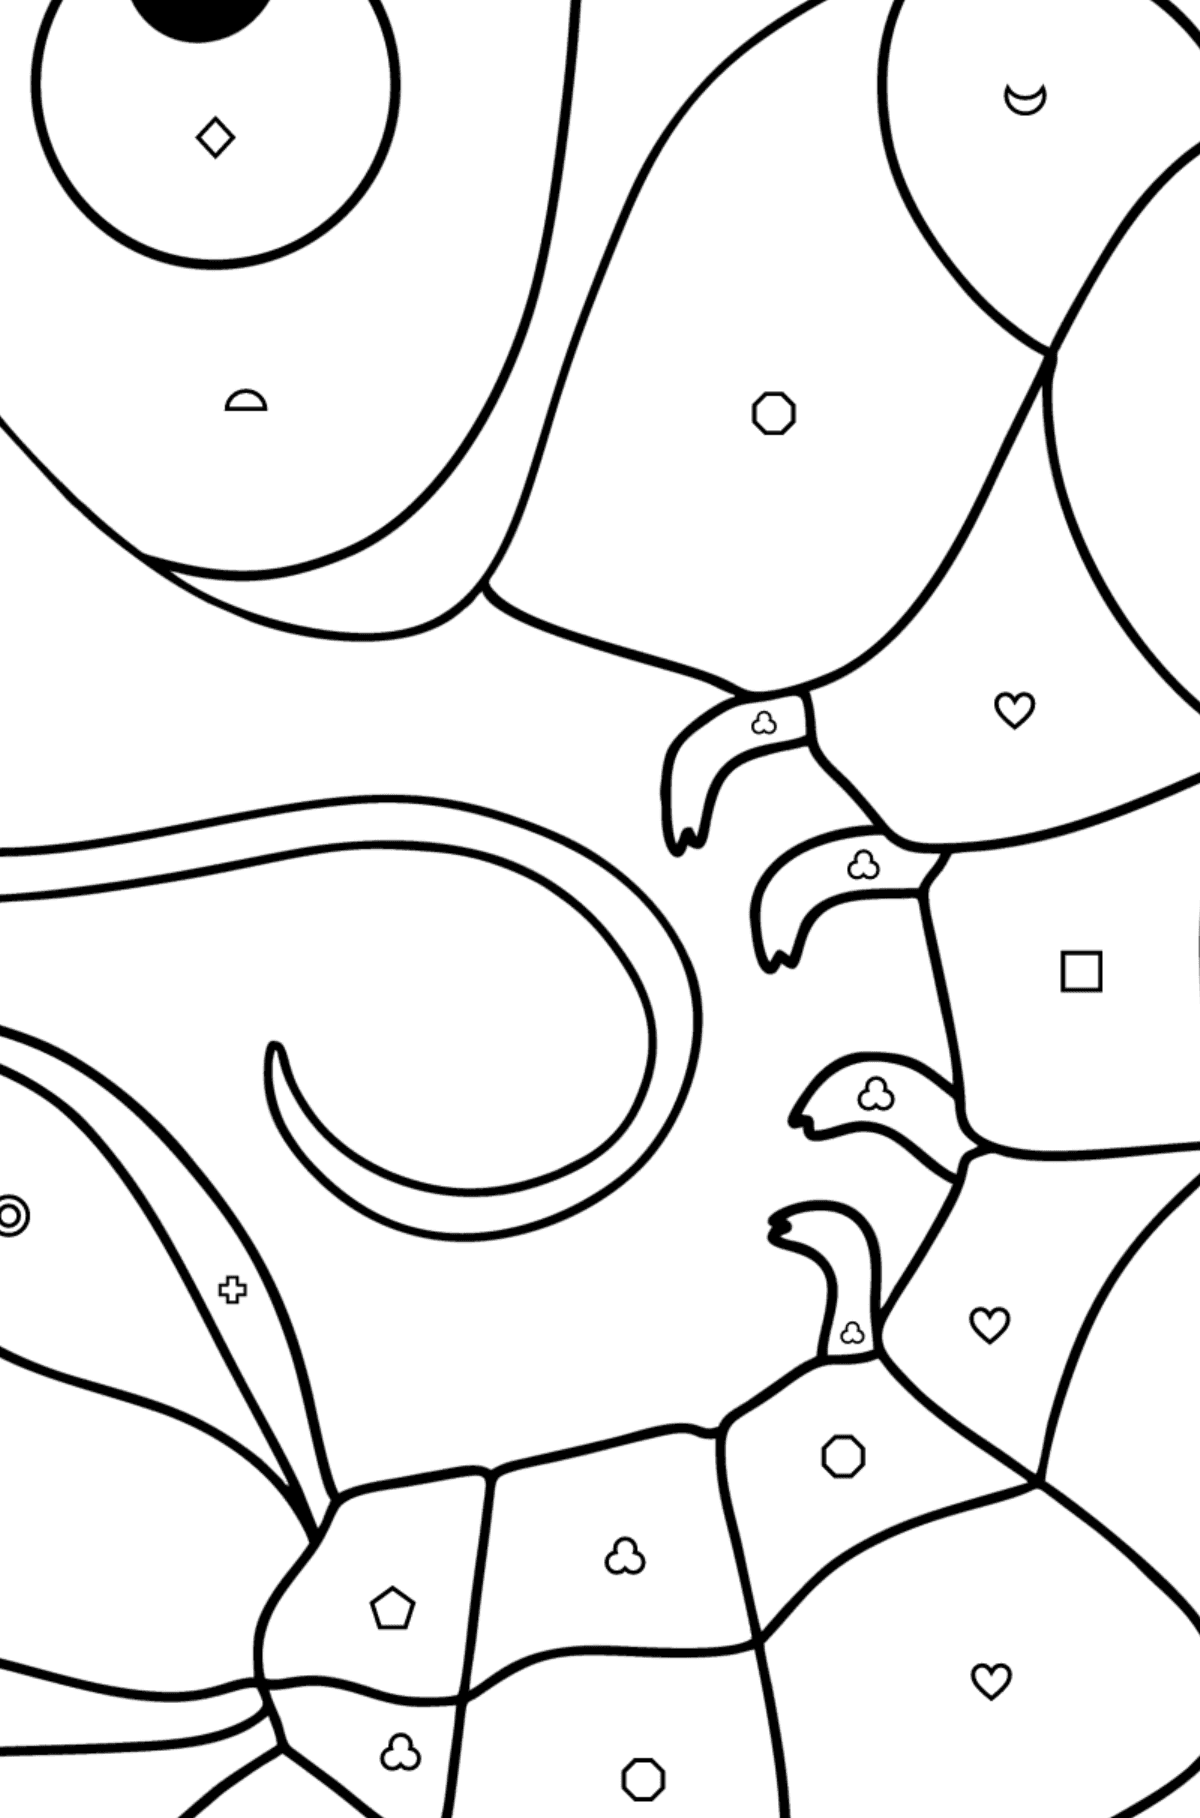 Coloriage Crevette - Coloriage par Formes Géométriques pour les Enfants